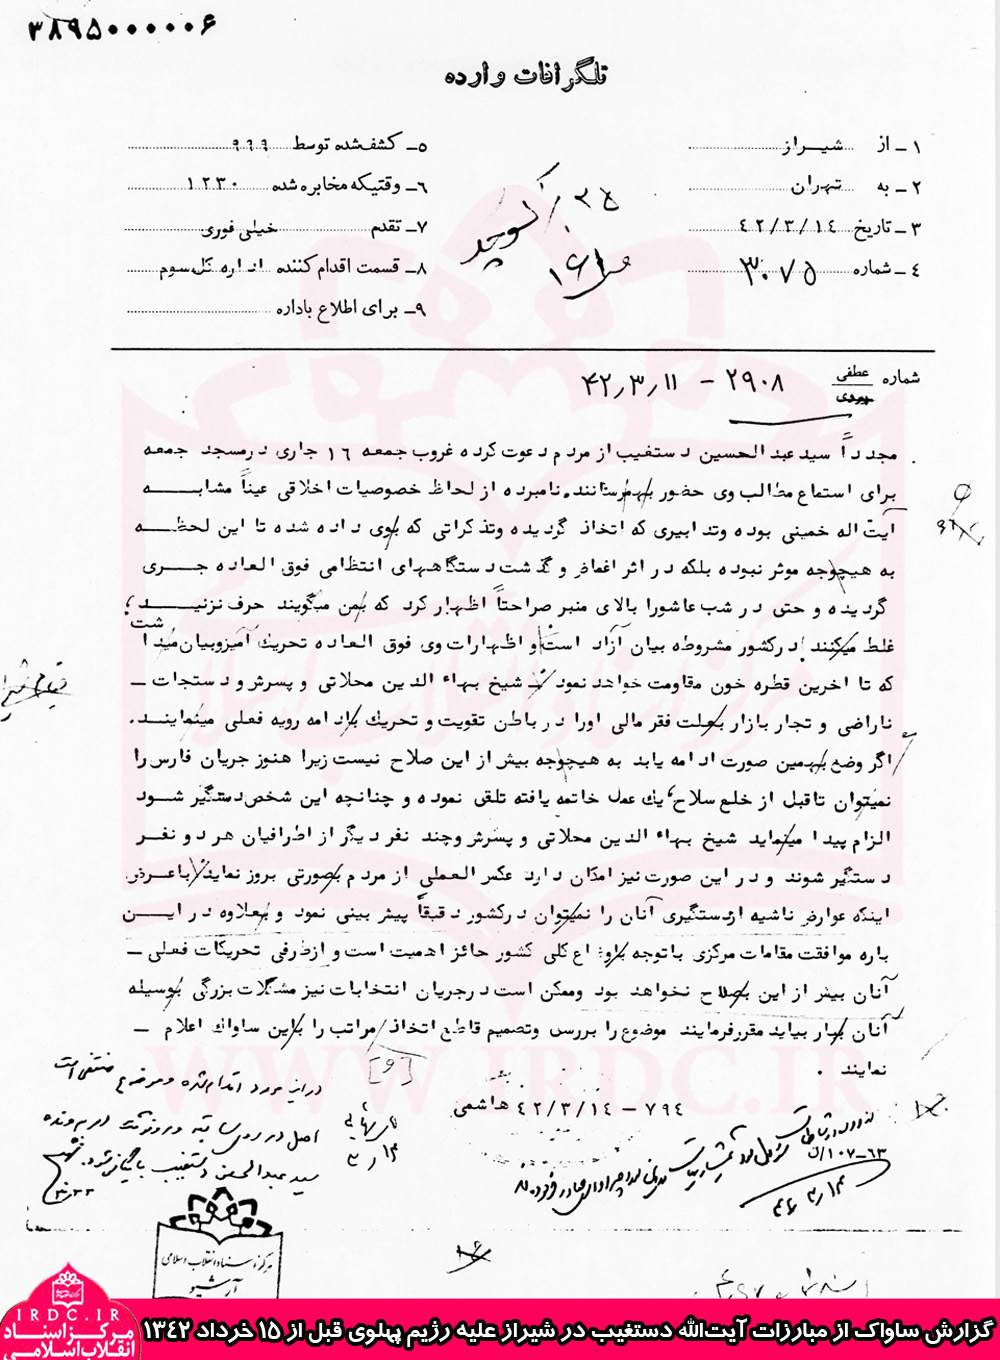 گزارش ساواک از مبارزات آیت‌الله‌ دستغیب در شیراز علیه رژیم پهلوی قبل از 15 خرداد 1342: نامبرده از لحاظ خصوصیات اخلاقی عیناً مشابه آیت‌الله خمینی بود